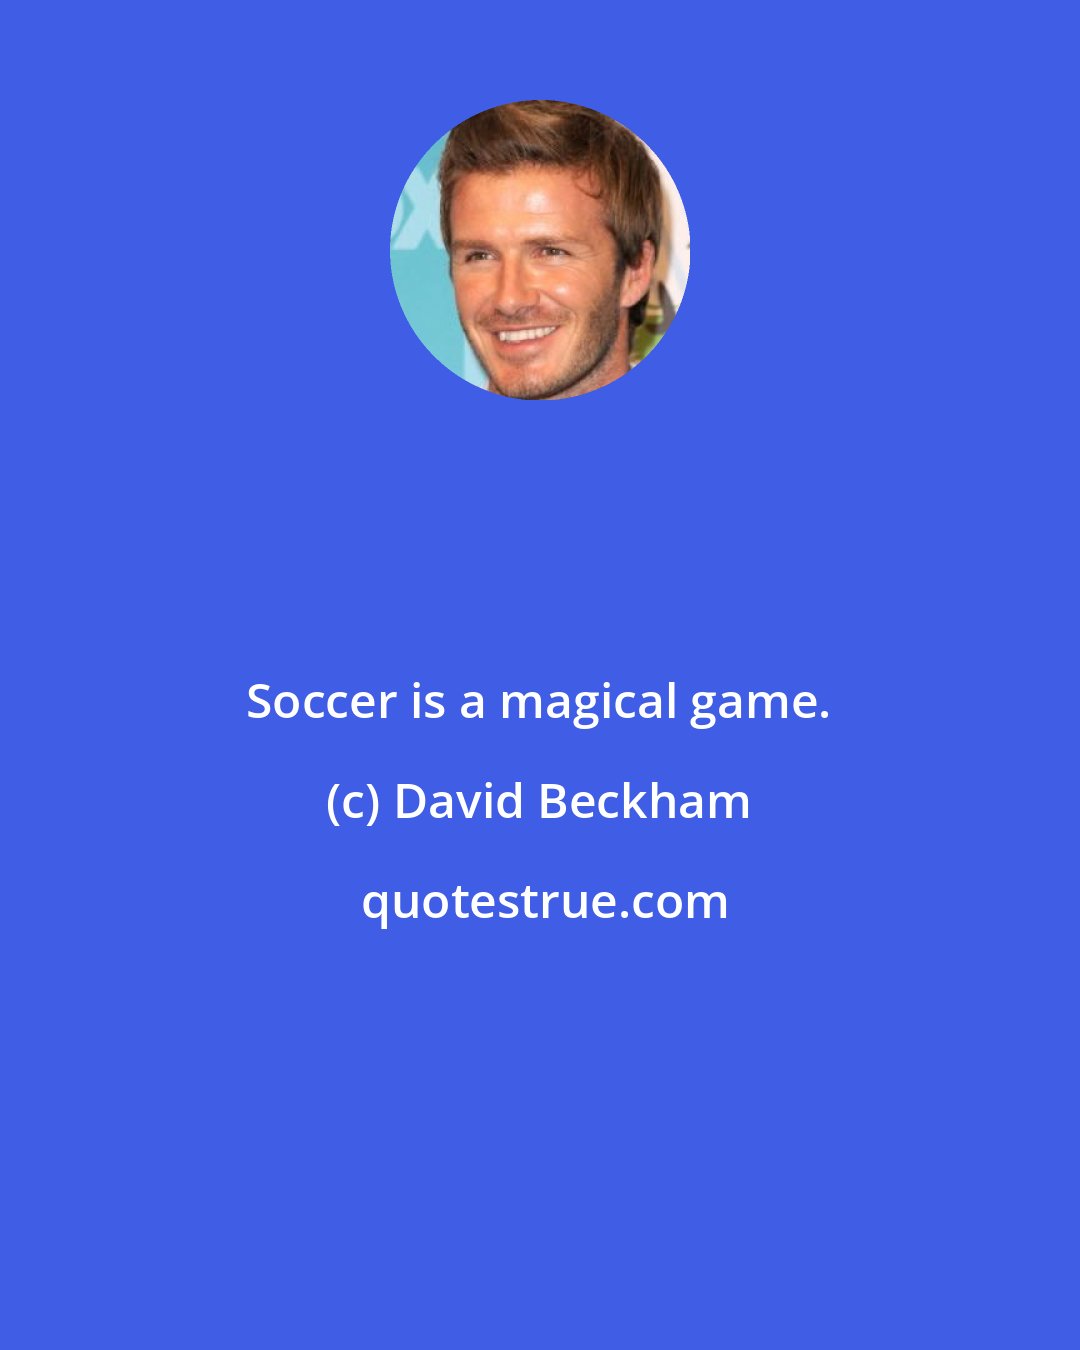 David Beckham: Soccer is a magical game.